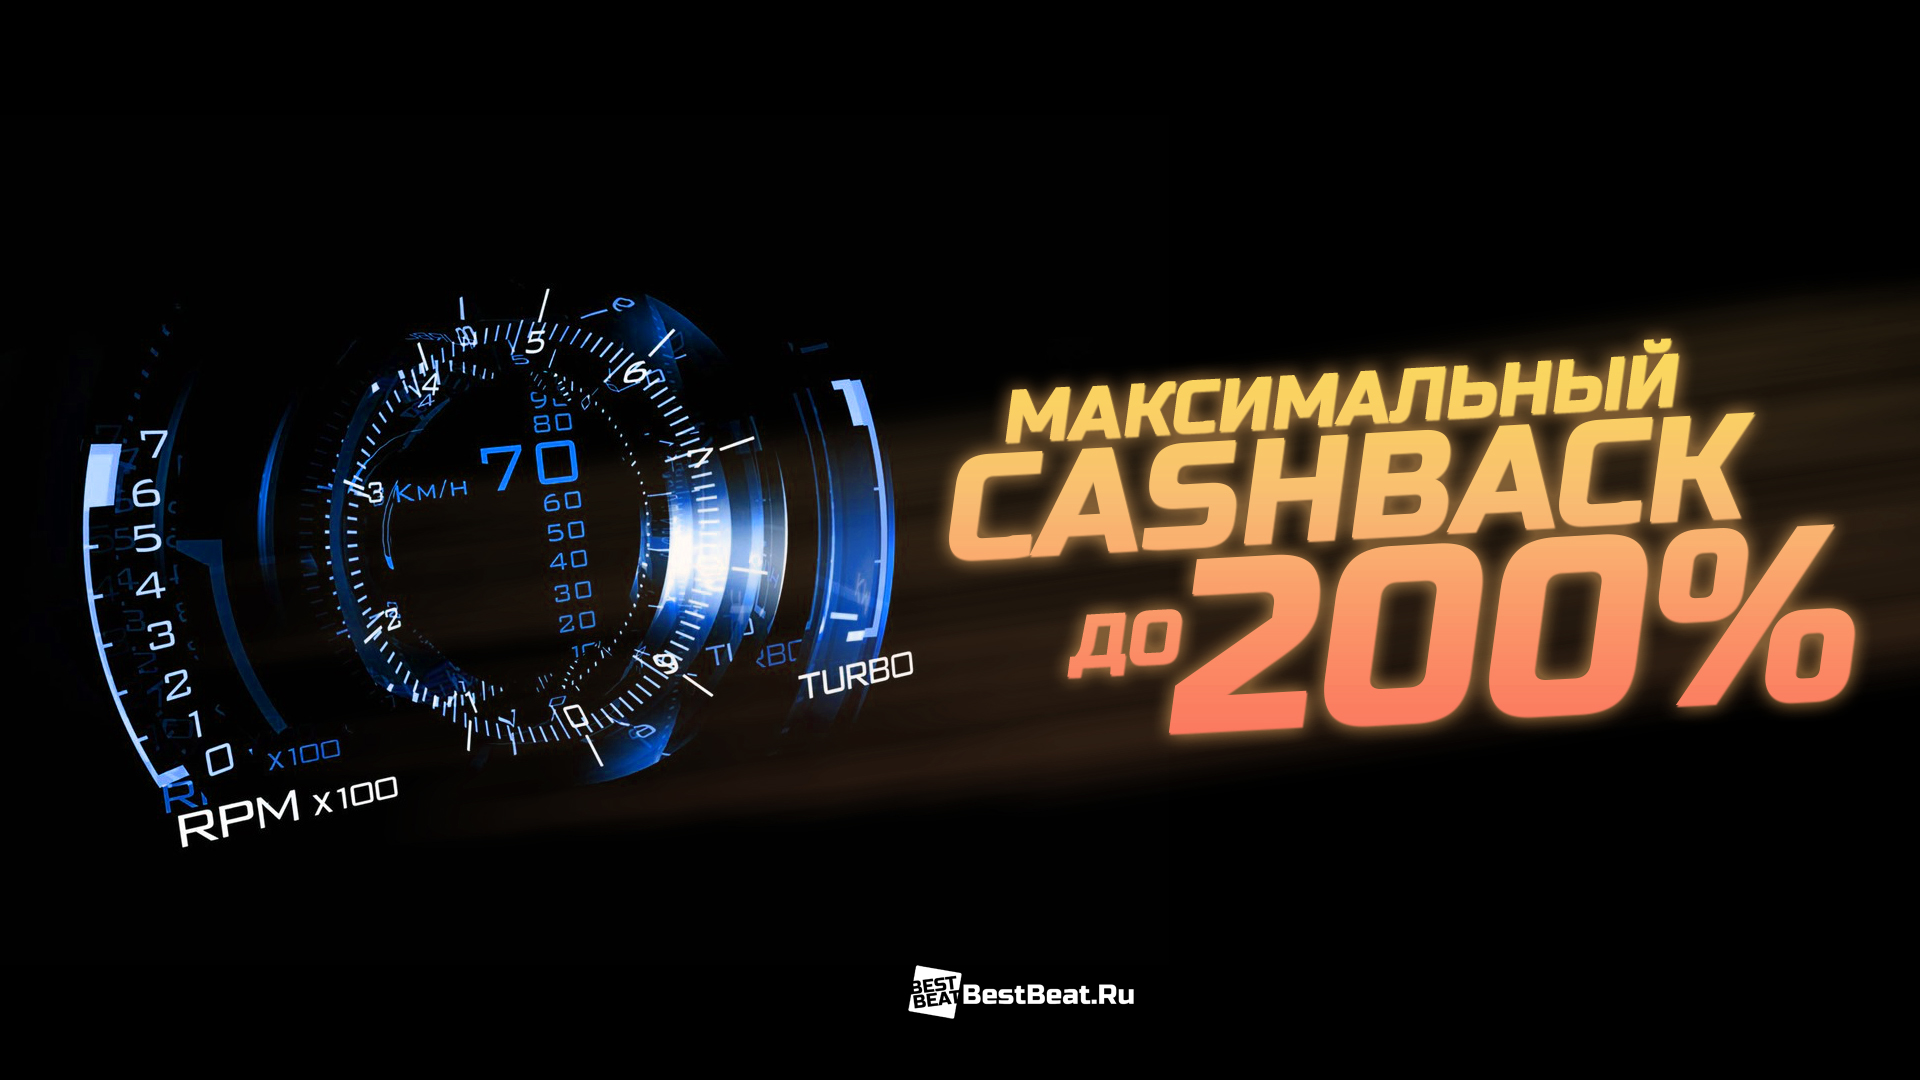 Максимальный CashBack - до 200%!